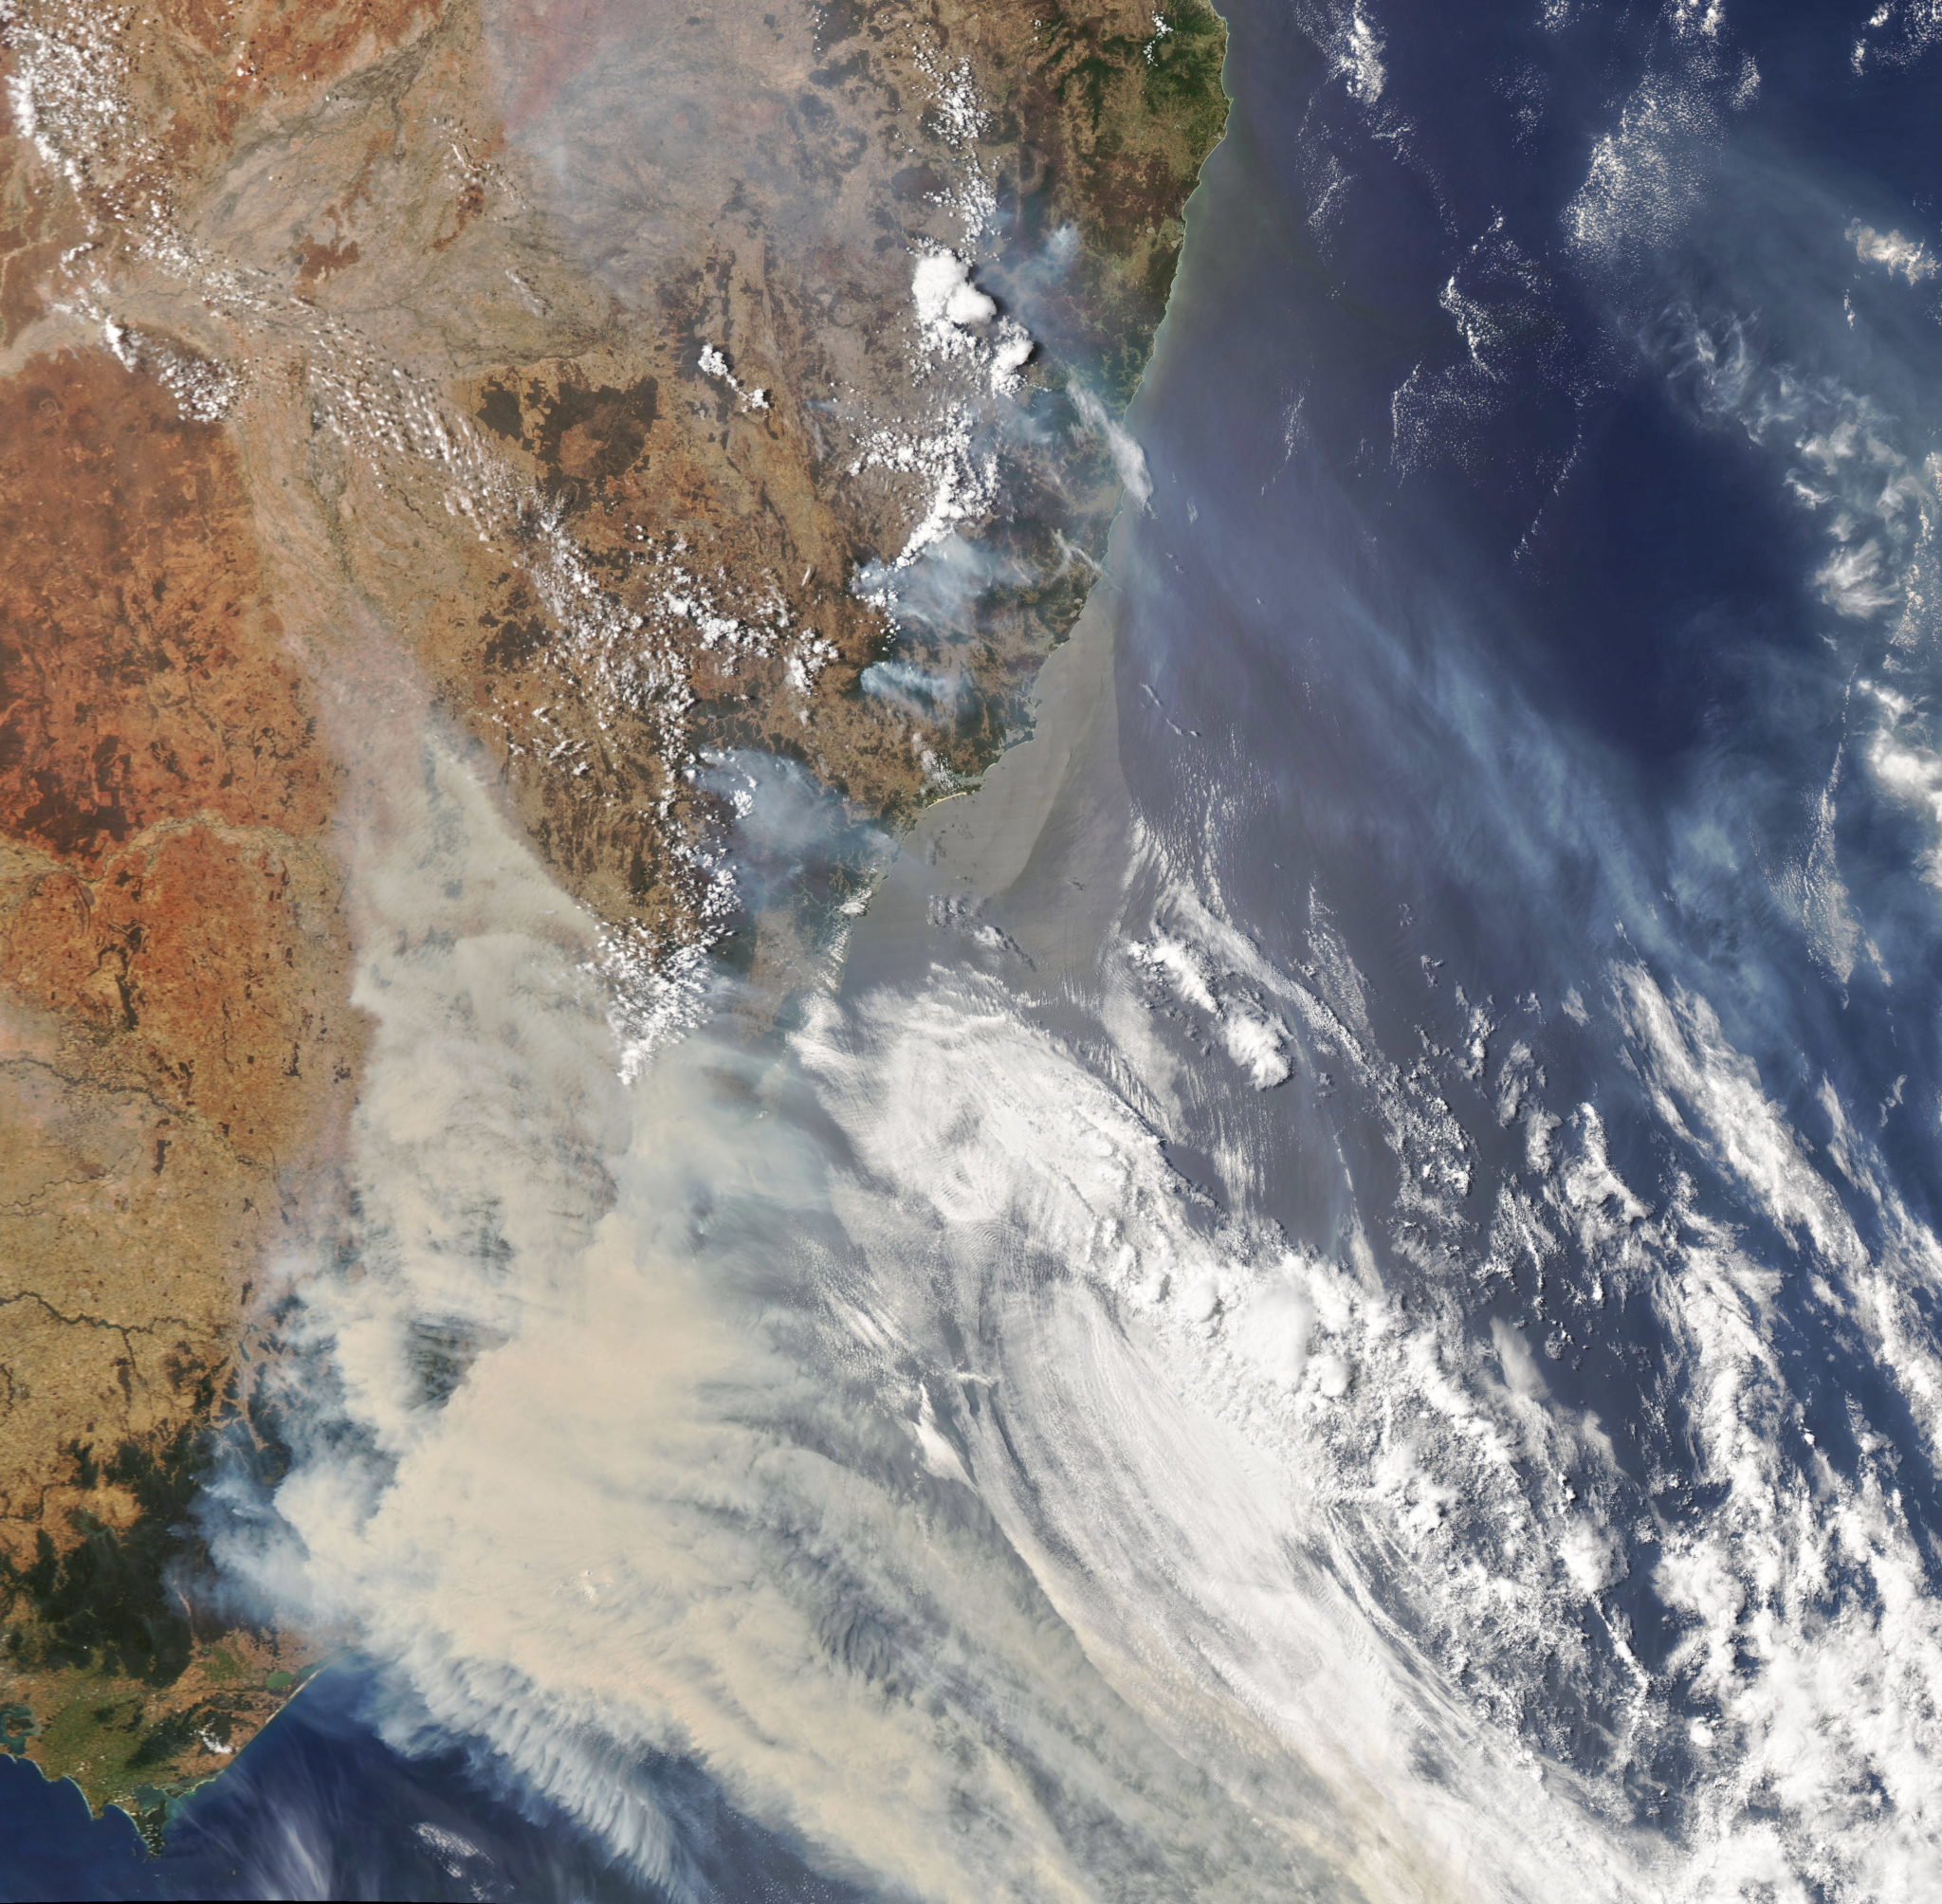 Zdjęcie zrobione przez satelitę NASA, obraz dymu unoszącego się nad południowowschodnią Australią, fot. NASA 